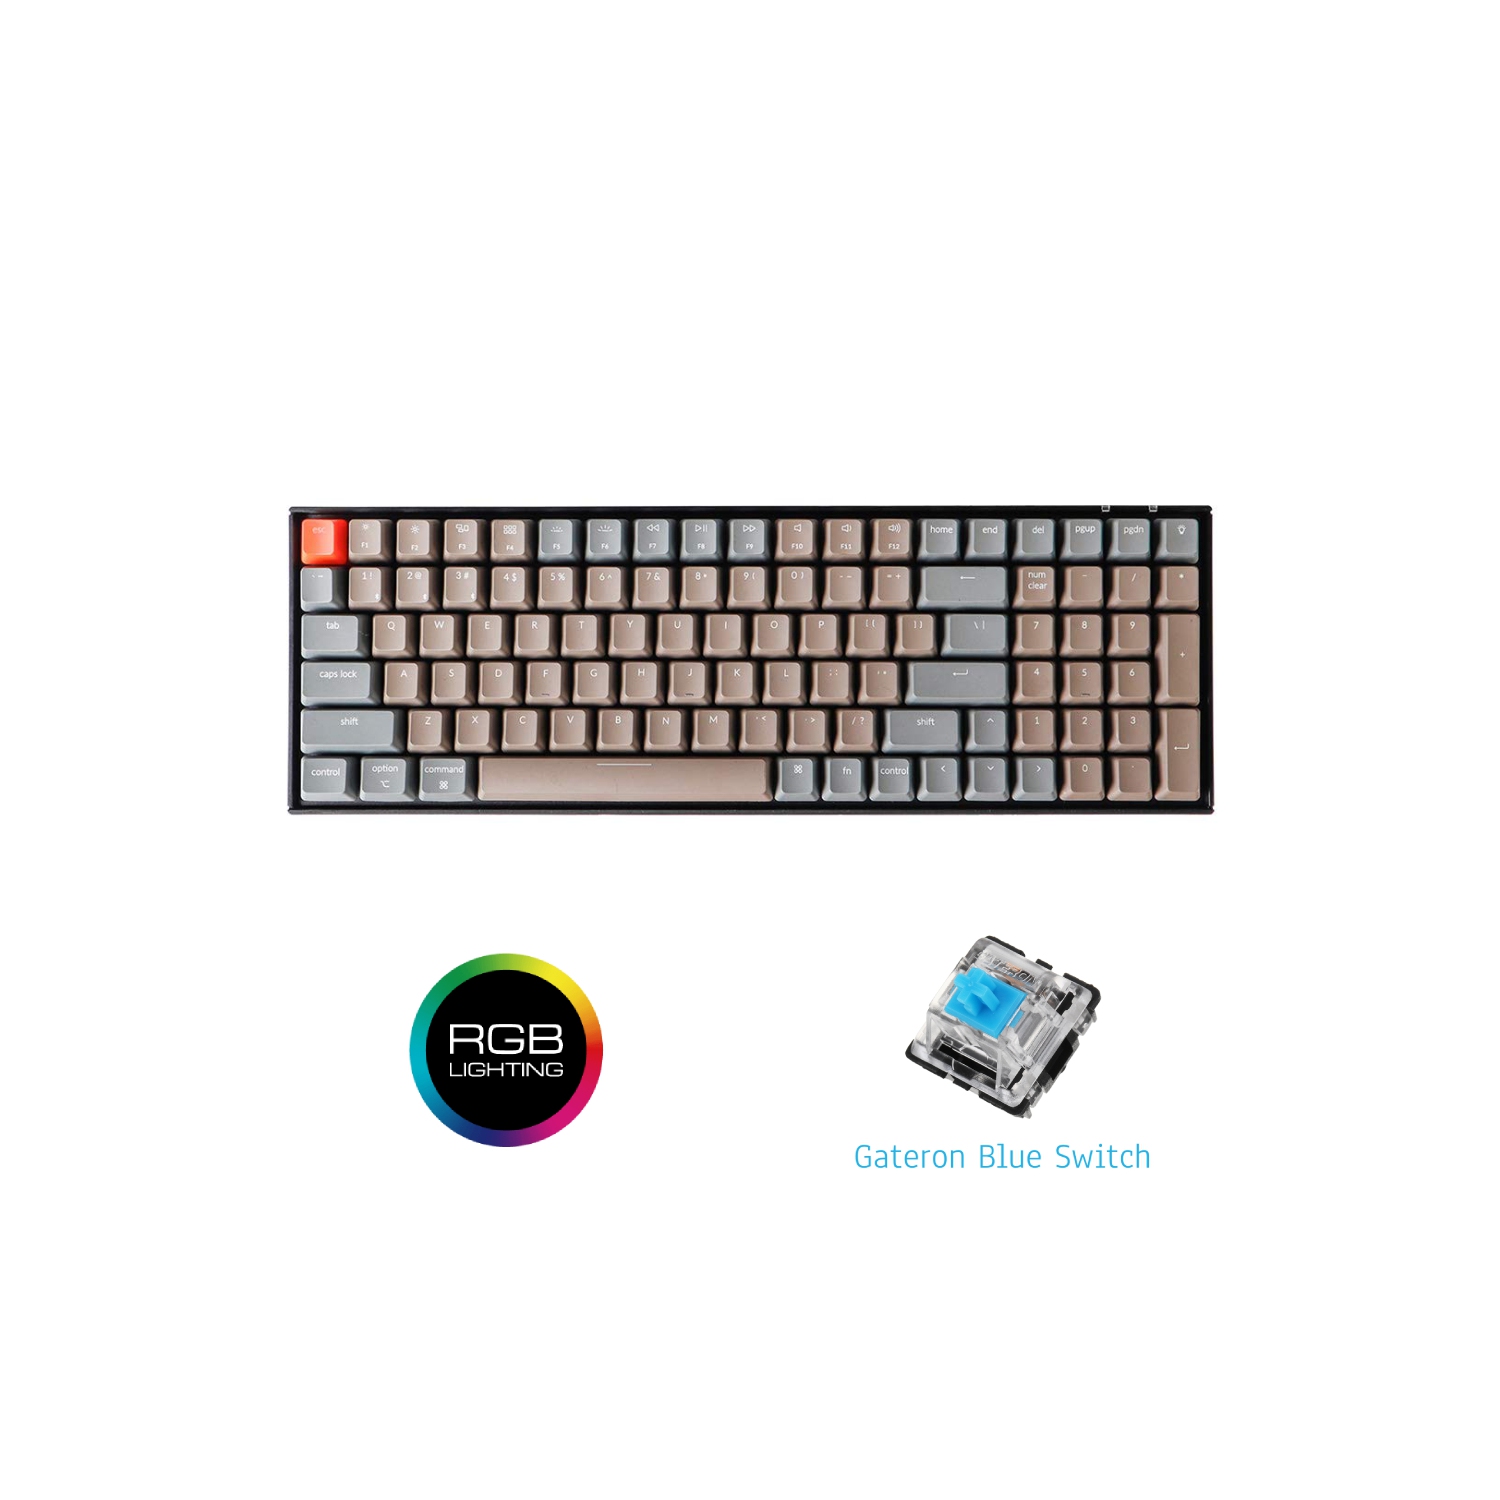 Keychron K4 Bluetooth/USB-C Keyboard - RGB Backlit - Gateron Blue - Mac and Windows